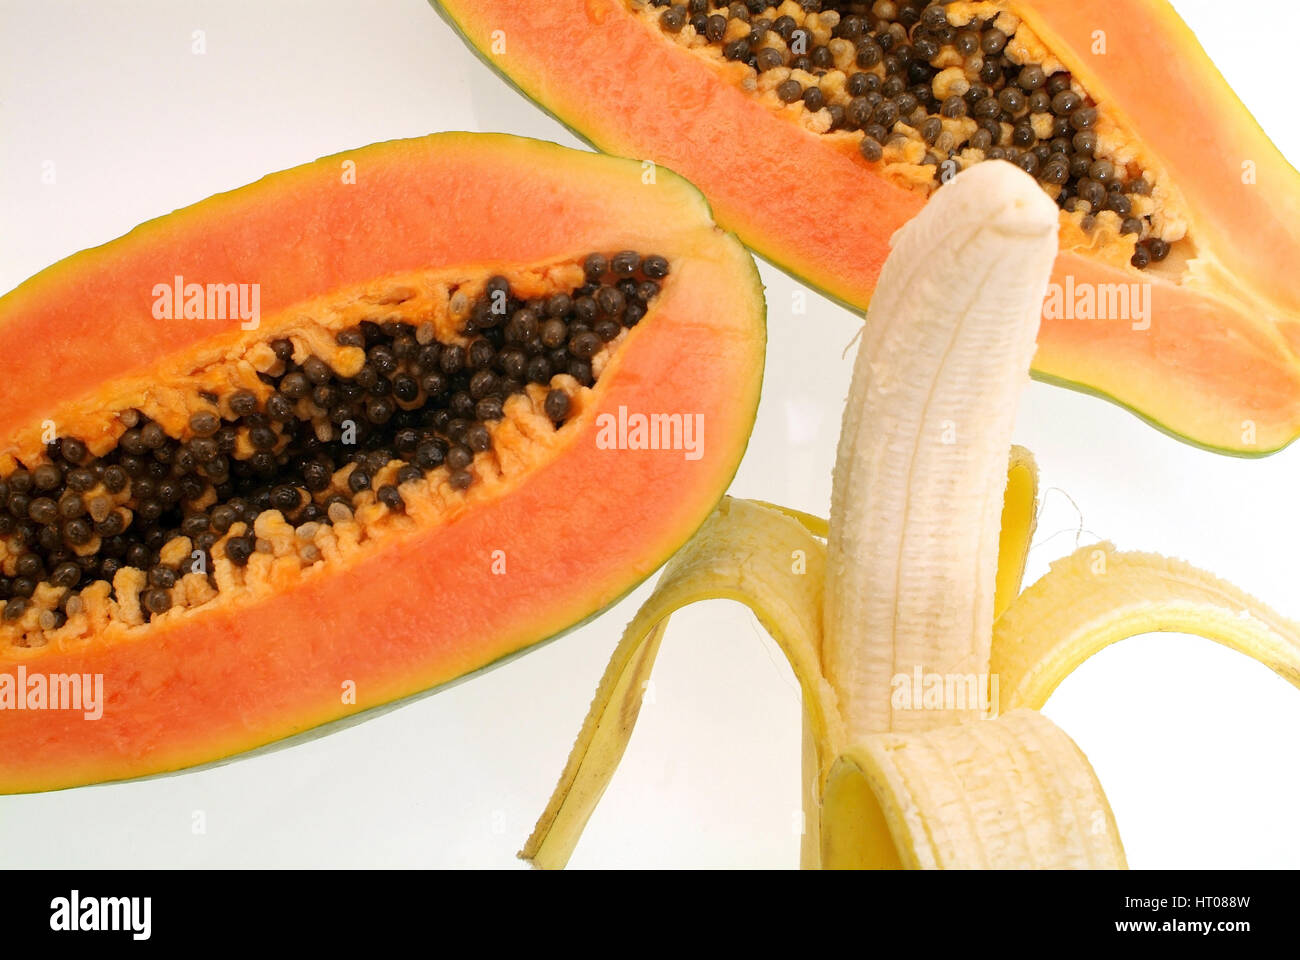 aufgeschnittene Papaya und geschaelte Banane - sliced papaya and peeled banana Stock Photo